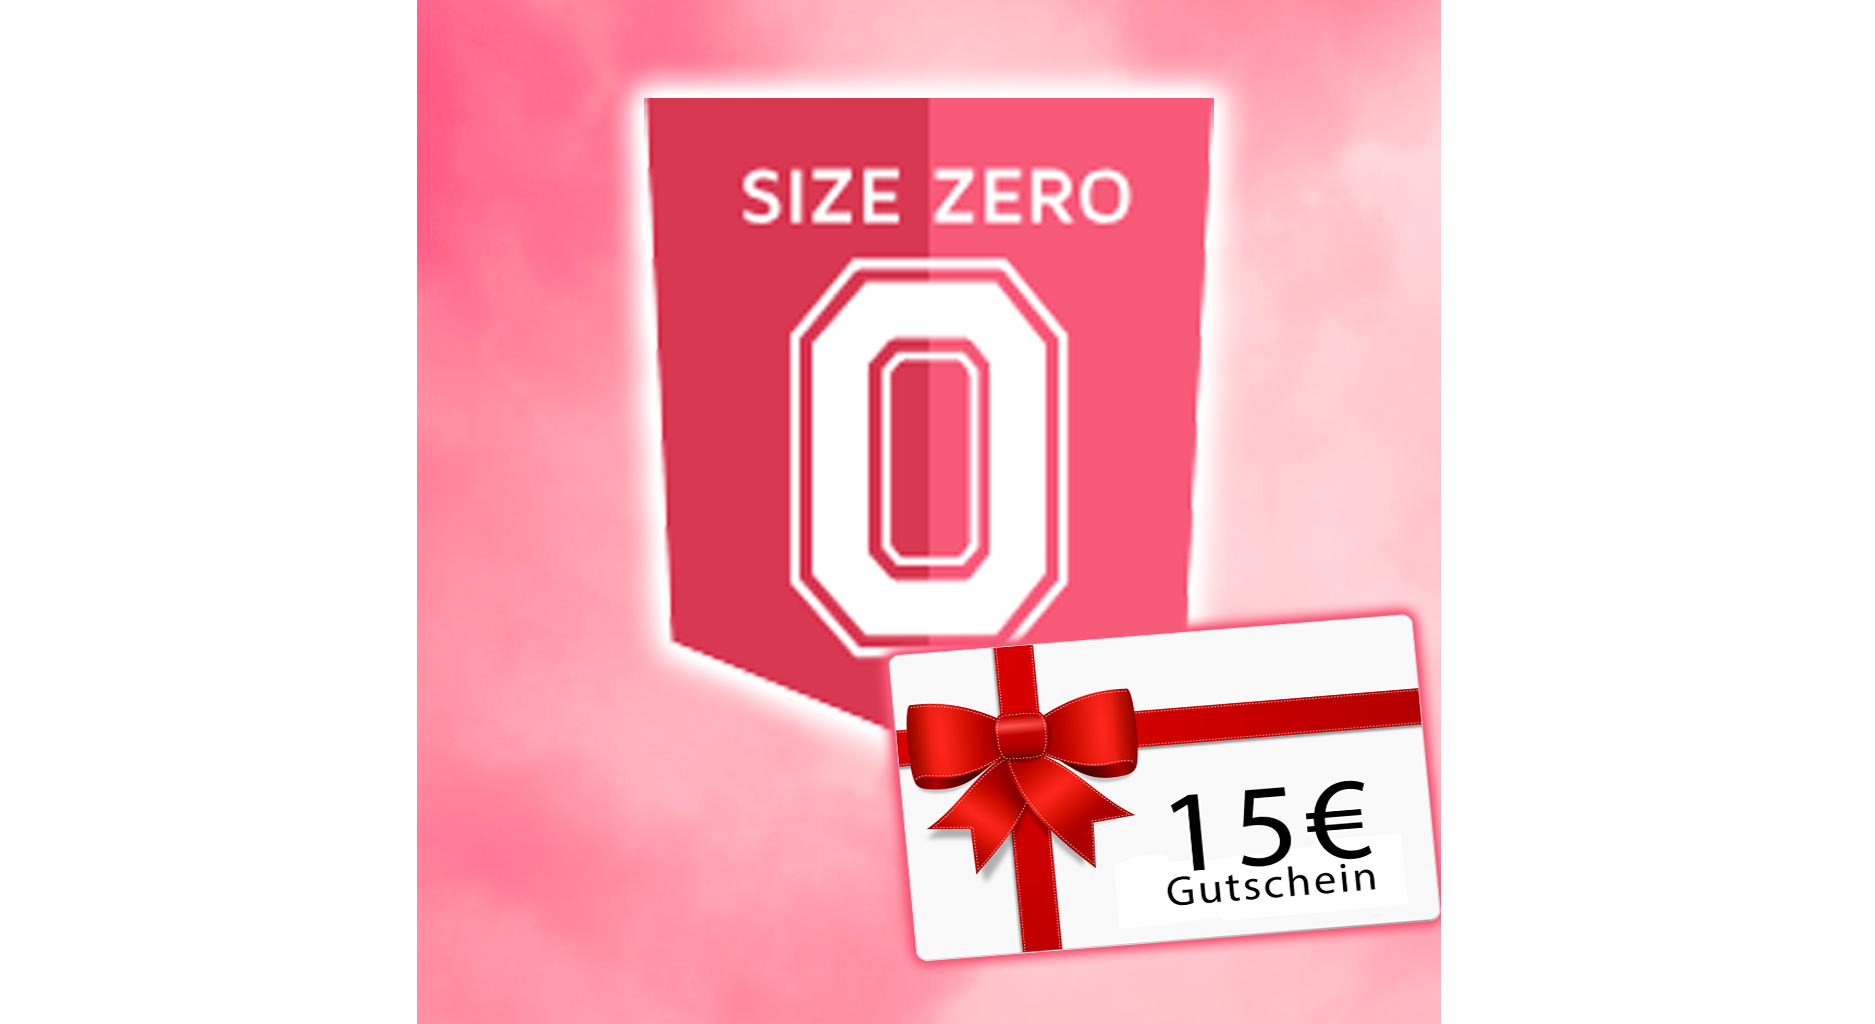 15€ Gutscheincode für Size-Zero